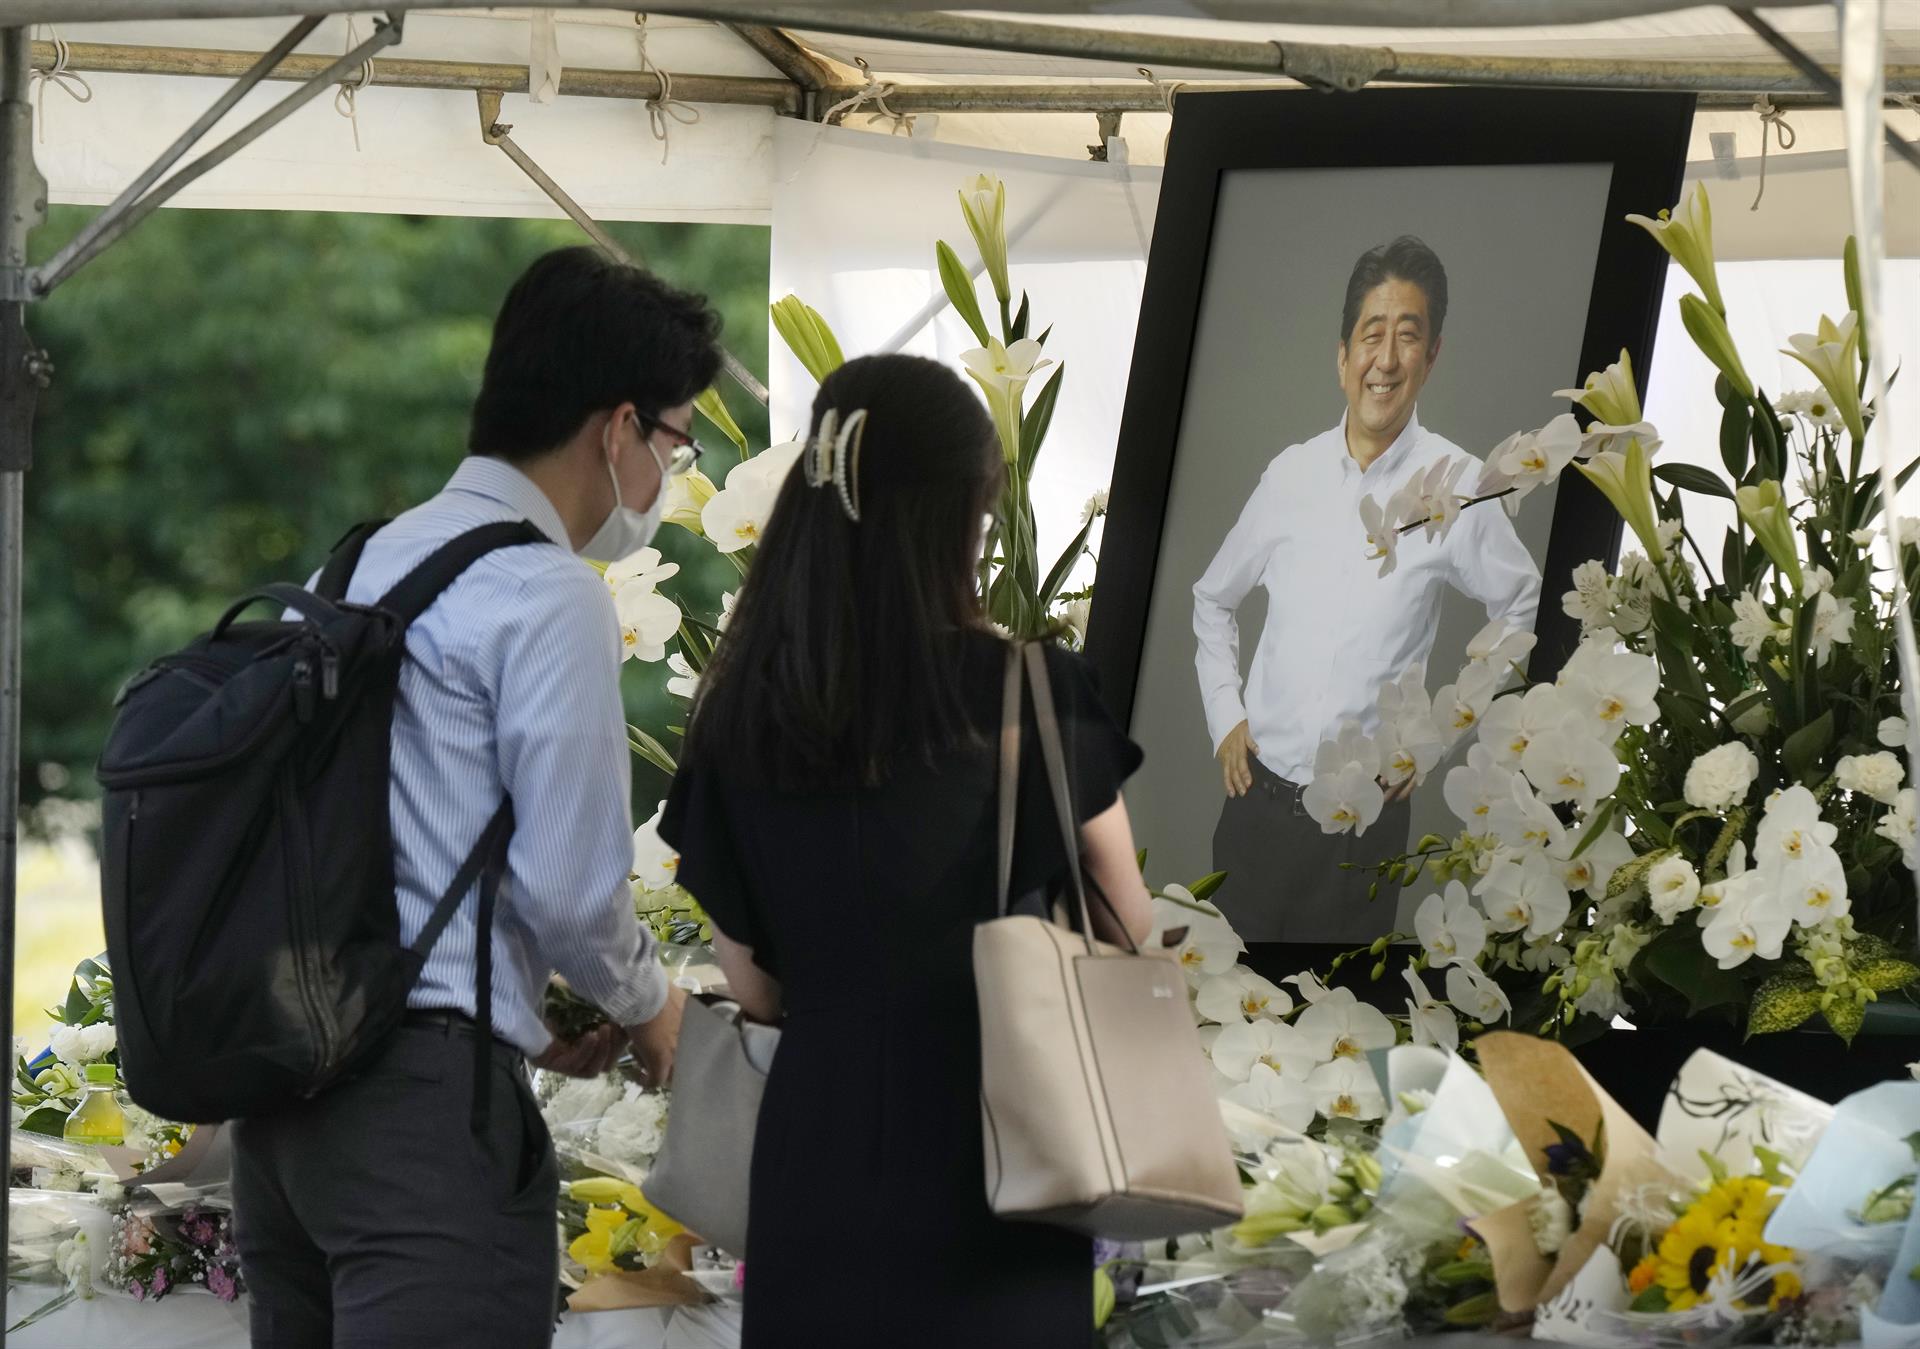 El funeral de Estado de Shinzo Abe costará al menos 1,8 millones de euros